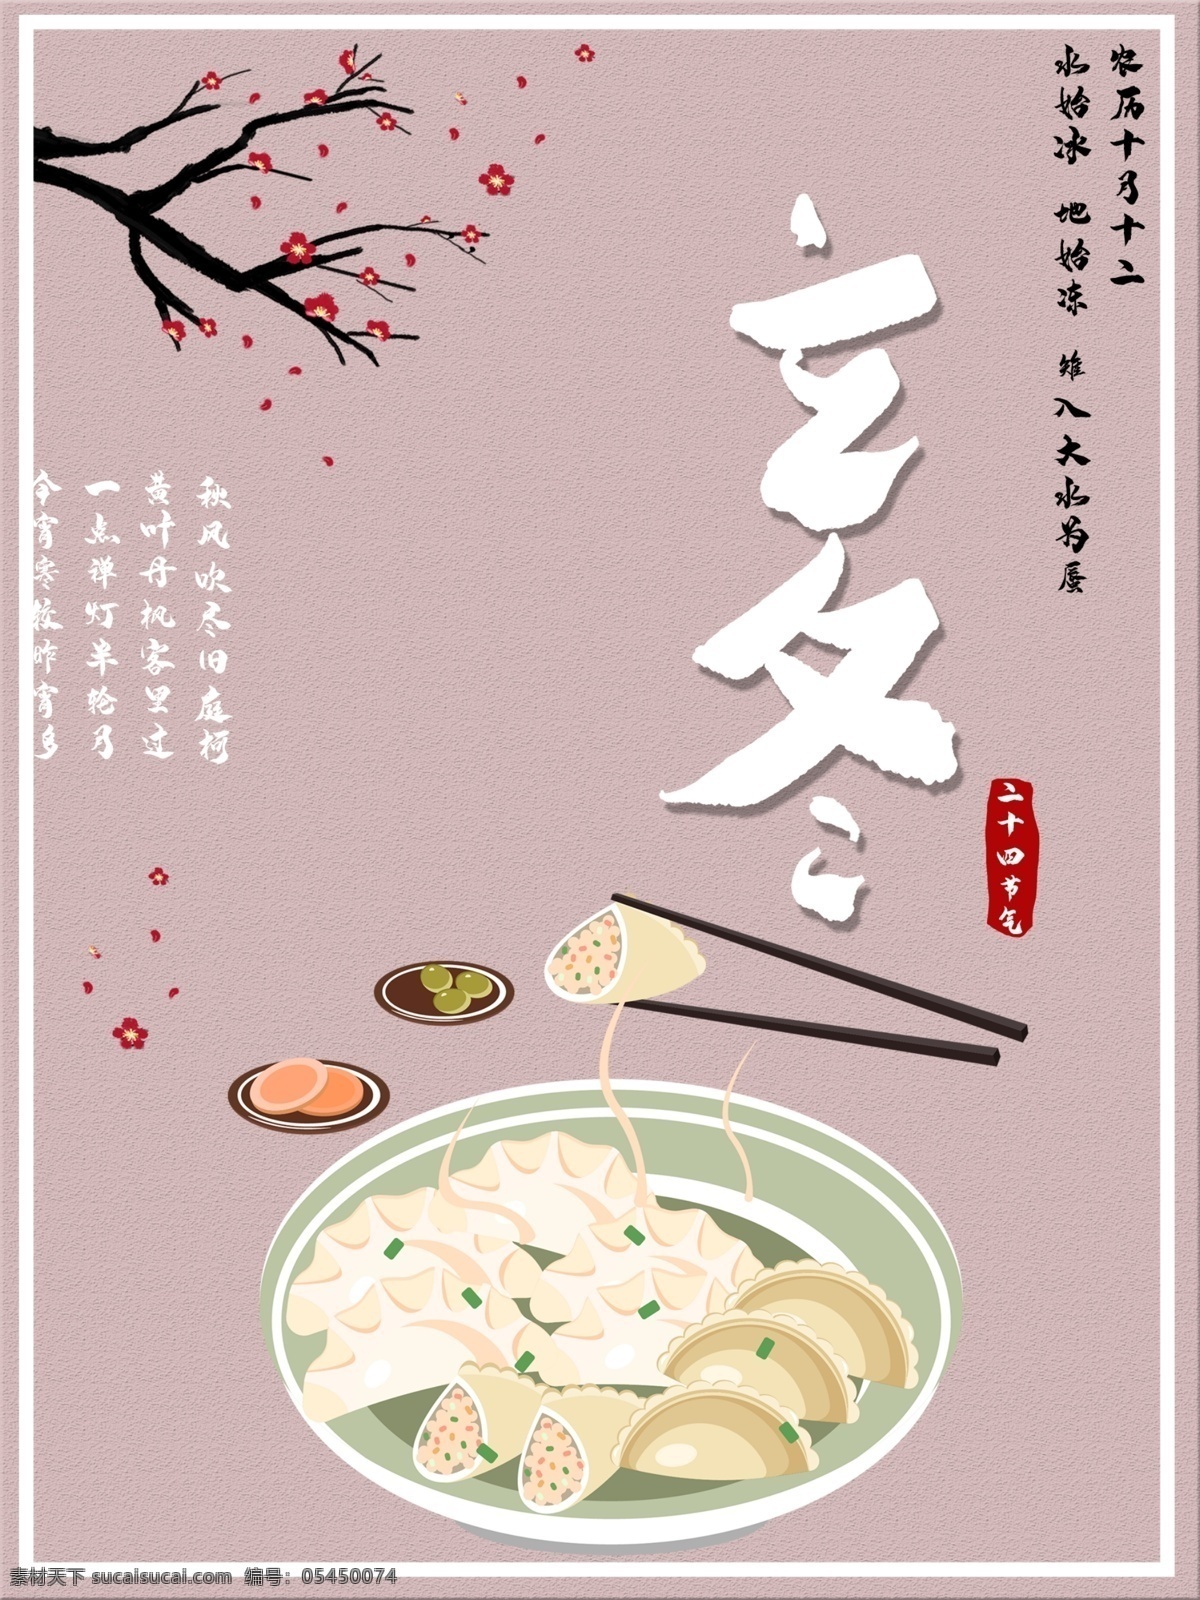 立冬 传统节日 文化 饺子 海报 节气 节日海报